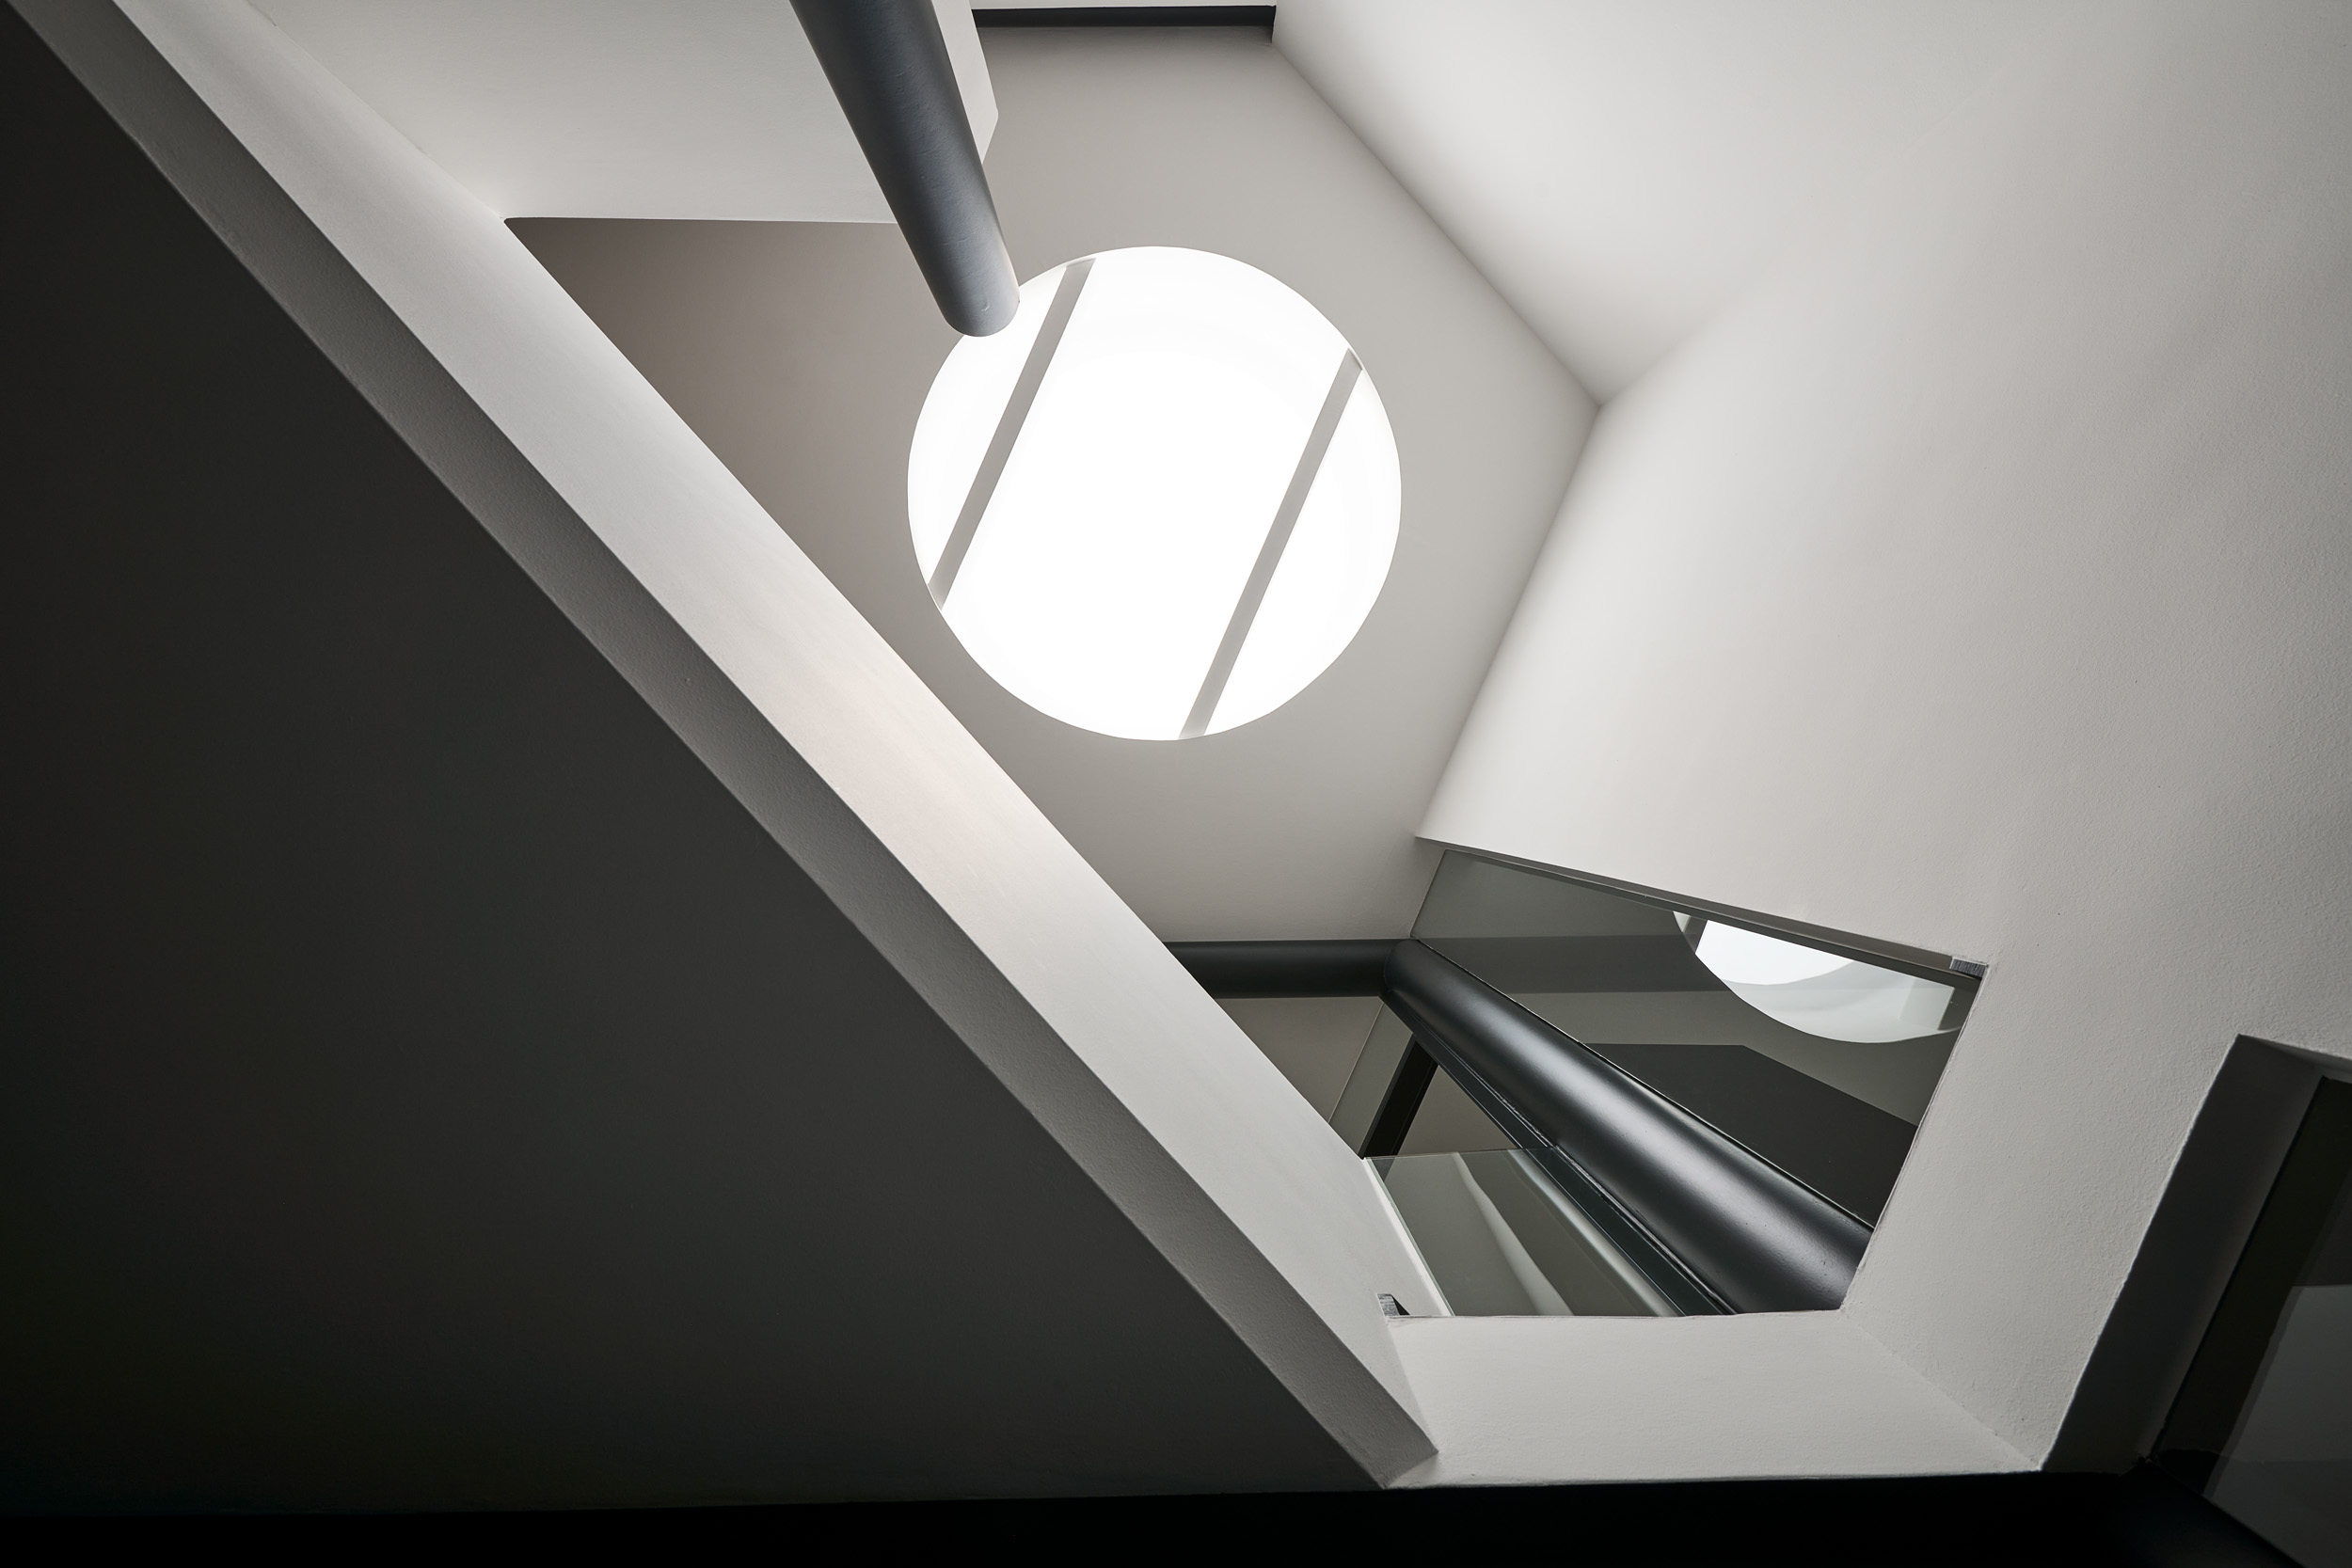 Blick nach oben: Neugestaltung Treppenaufgang und Flur mit rundem Bullaugenfenster in der Decke  – vielseitige Innenarchitektur von Raumideen.